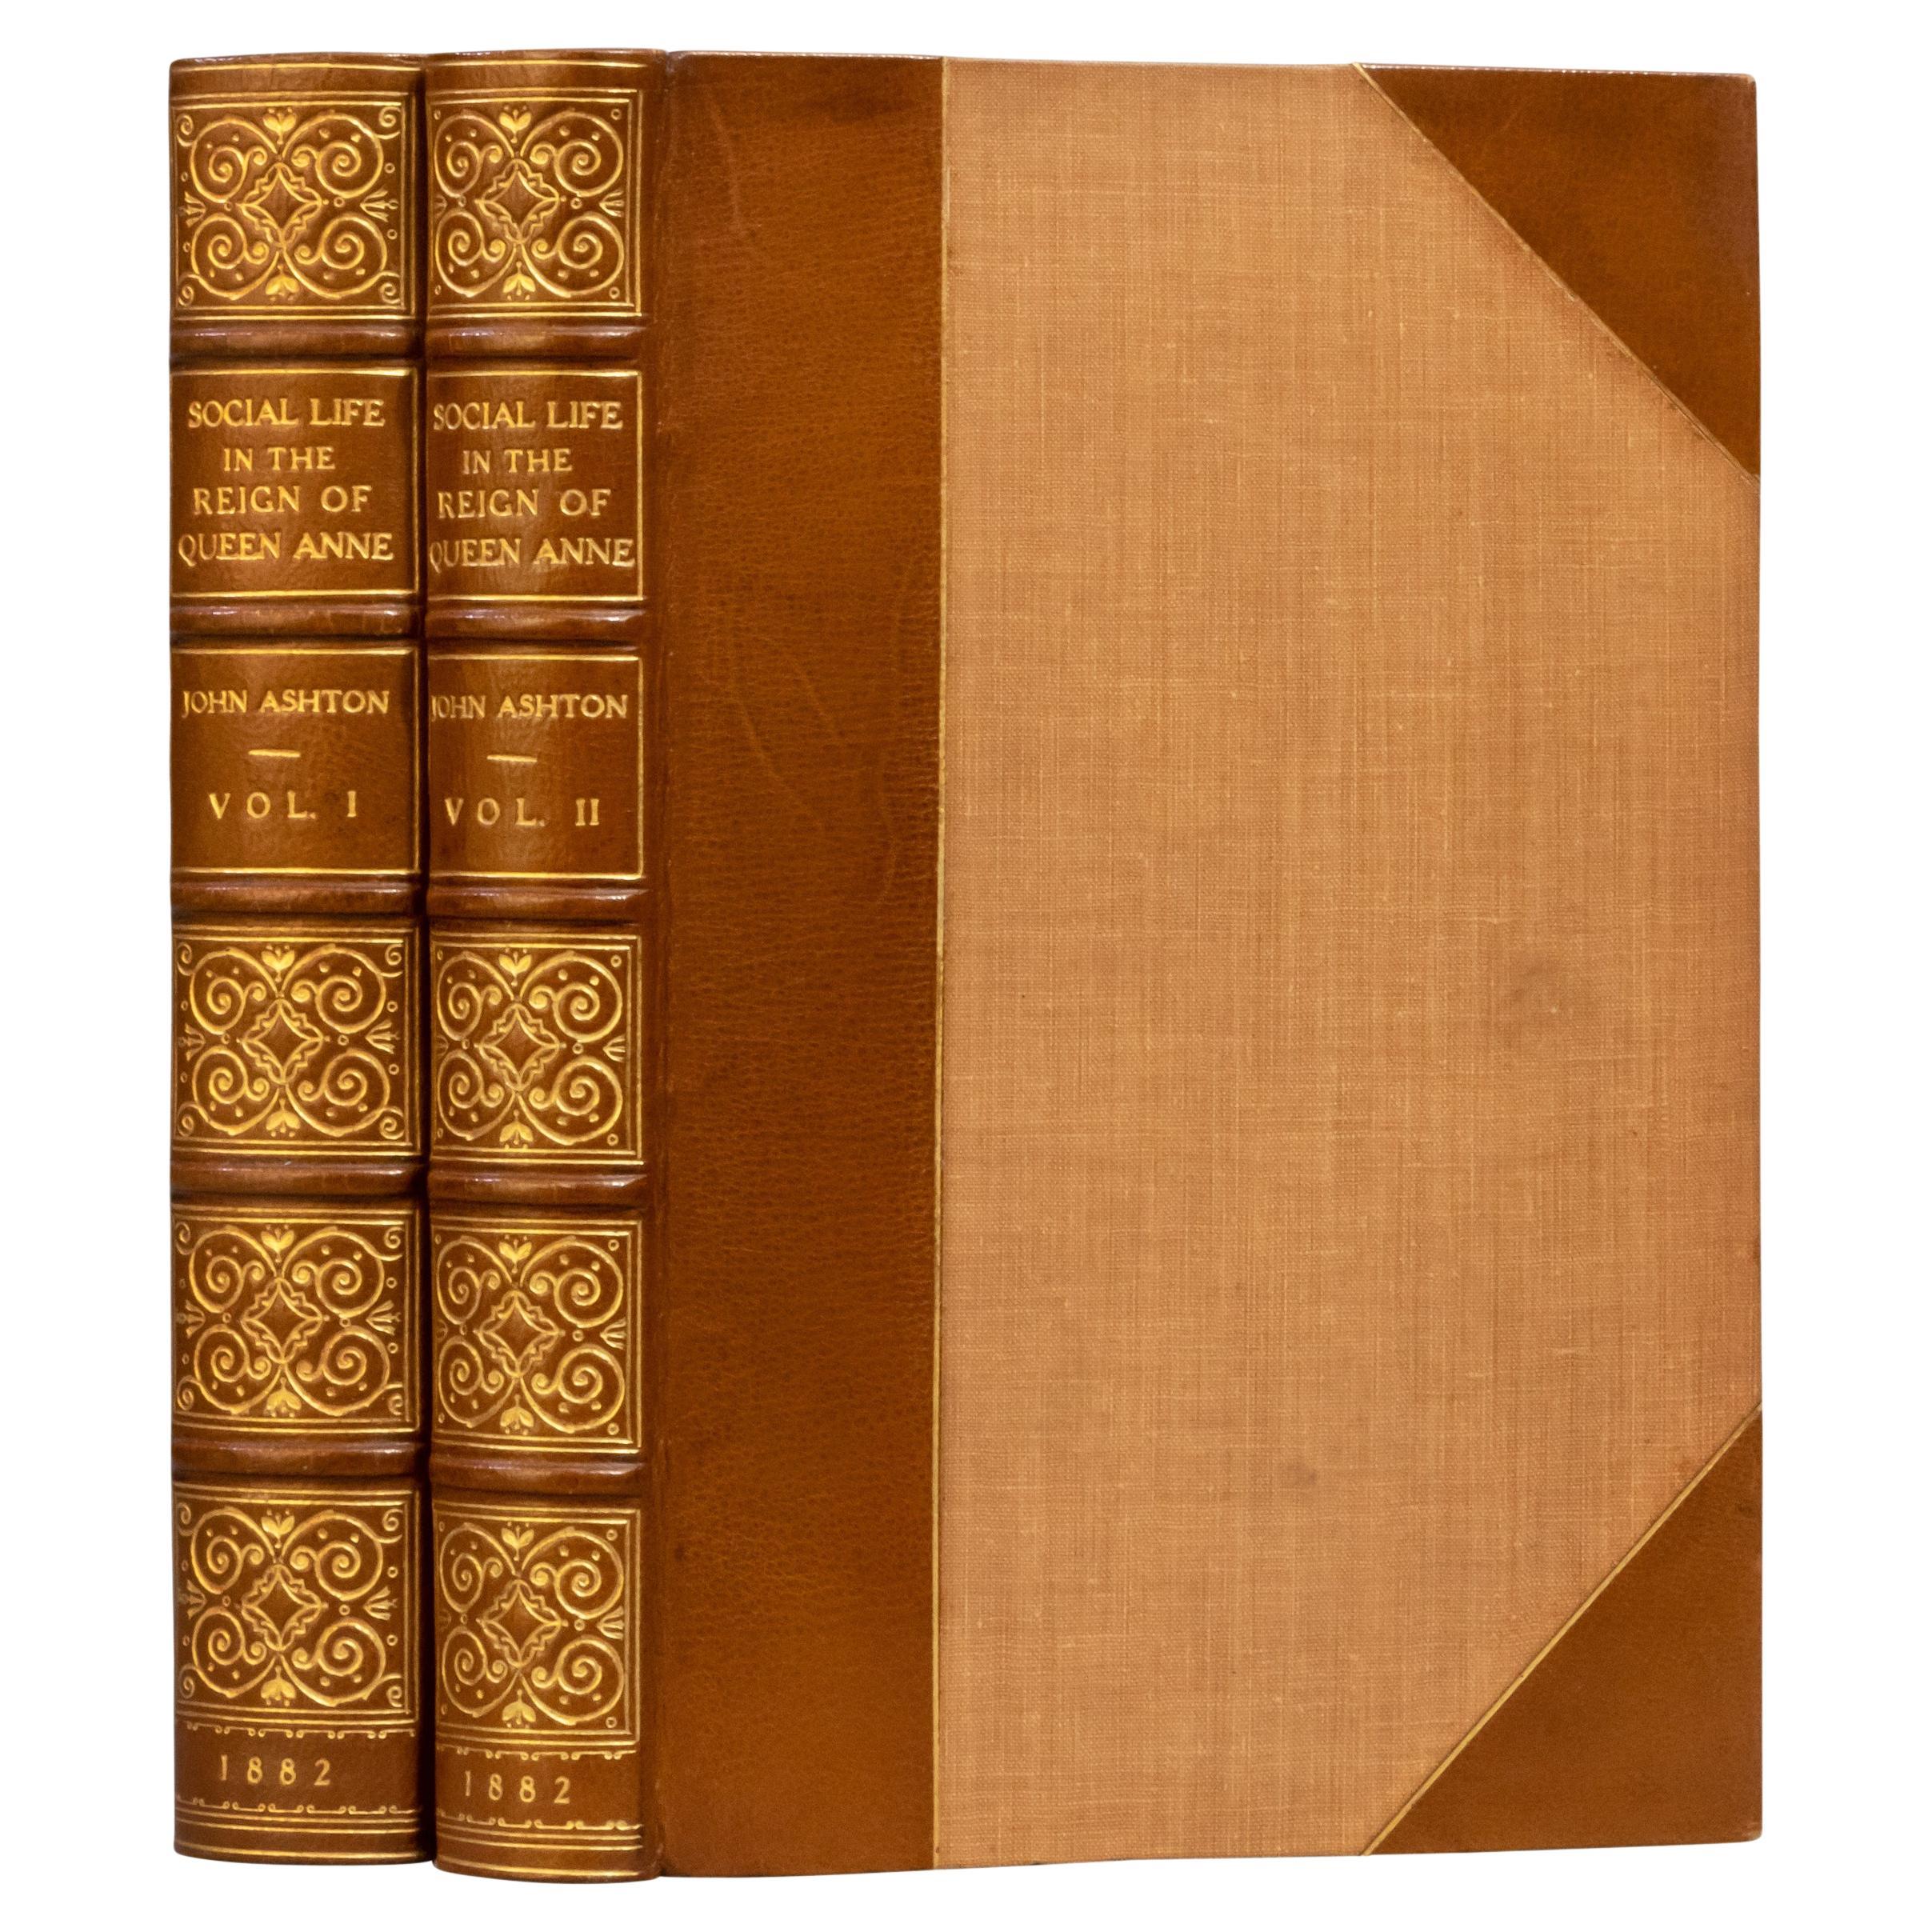 2 Volumes. John Ashton, Social Life in the Reign of Queen Anne